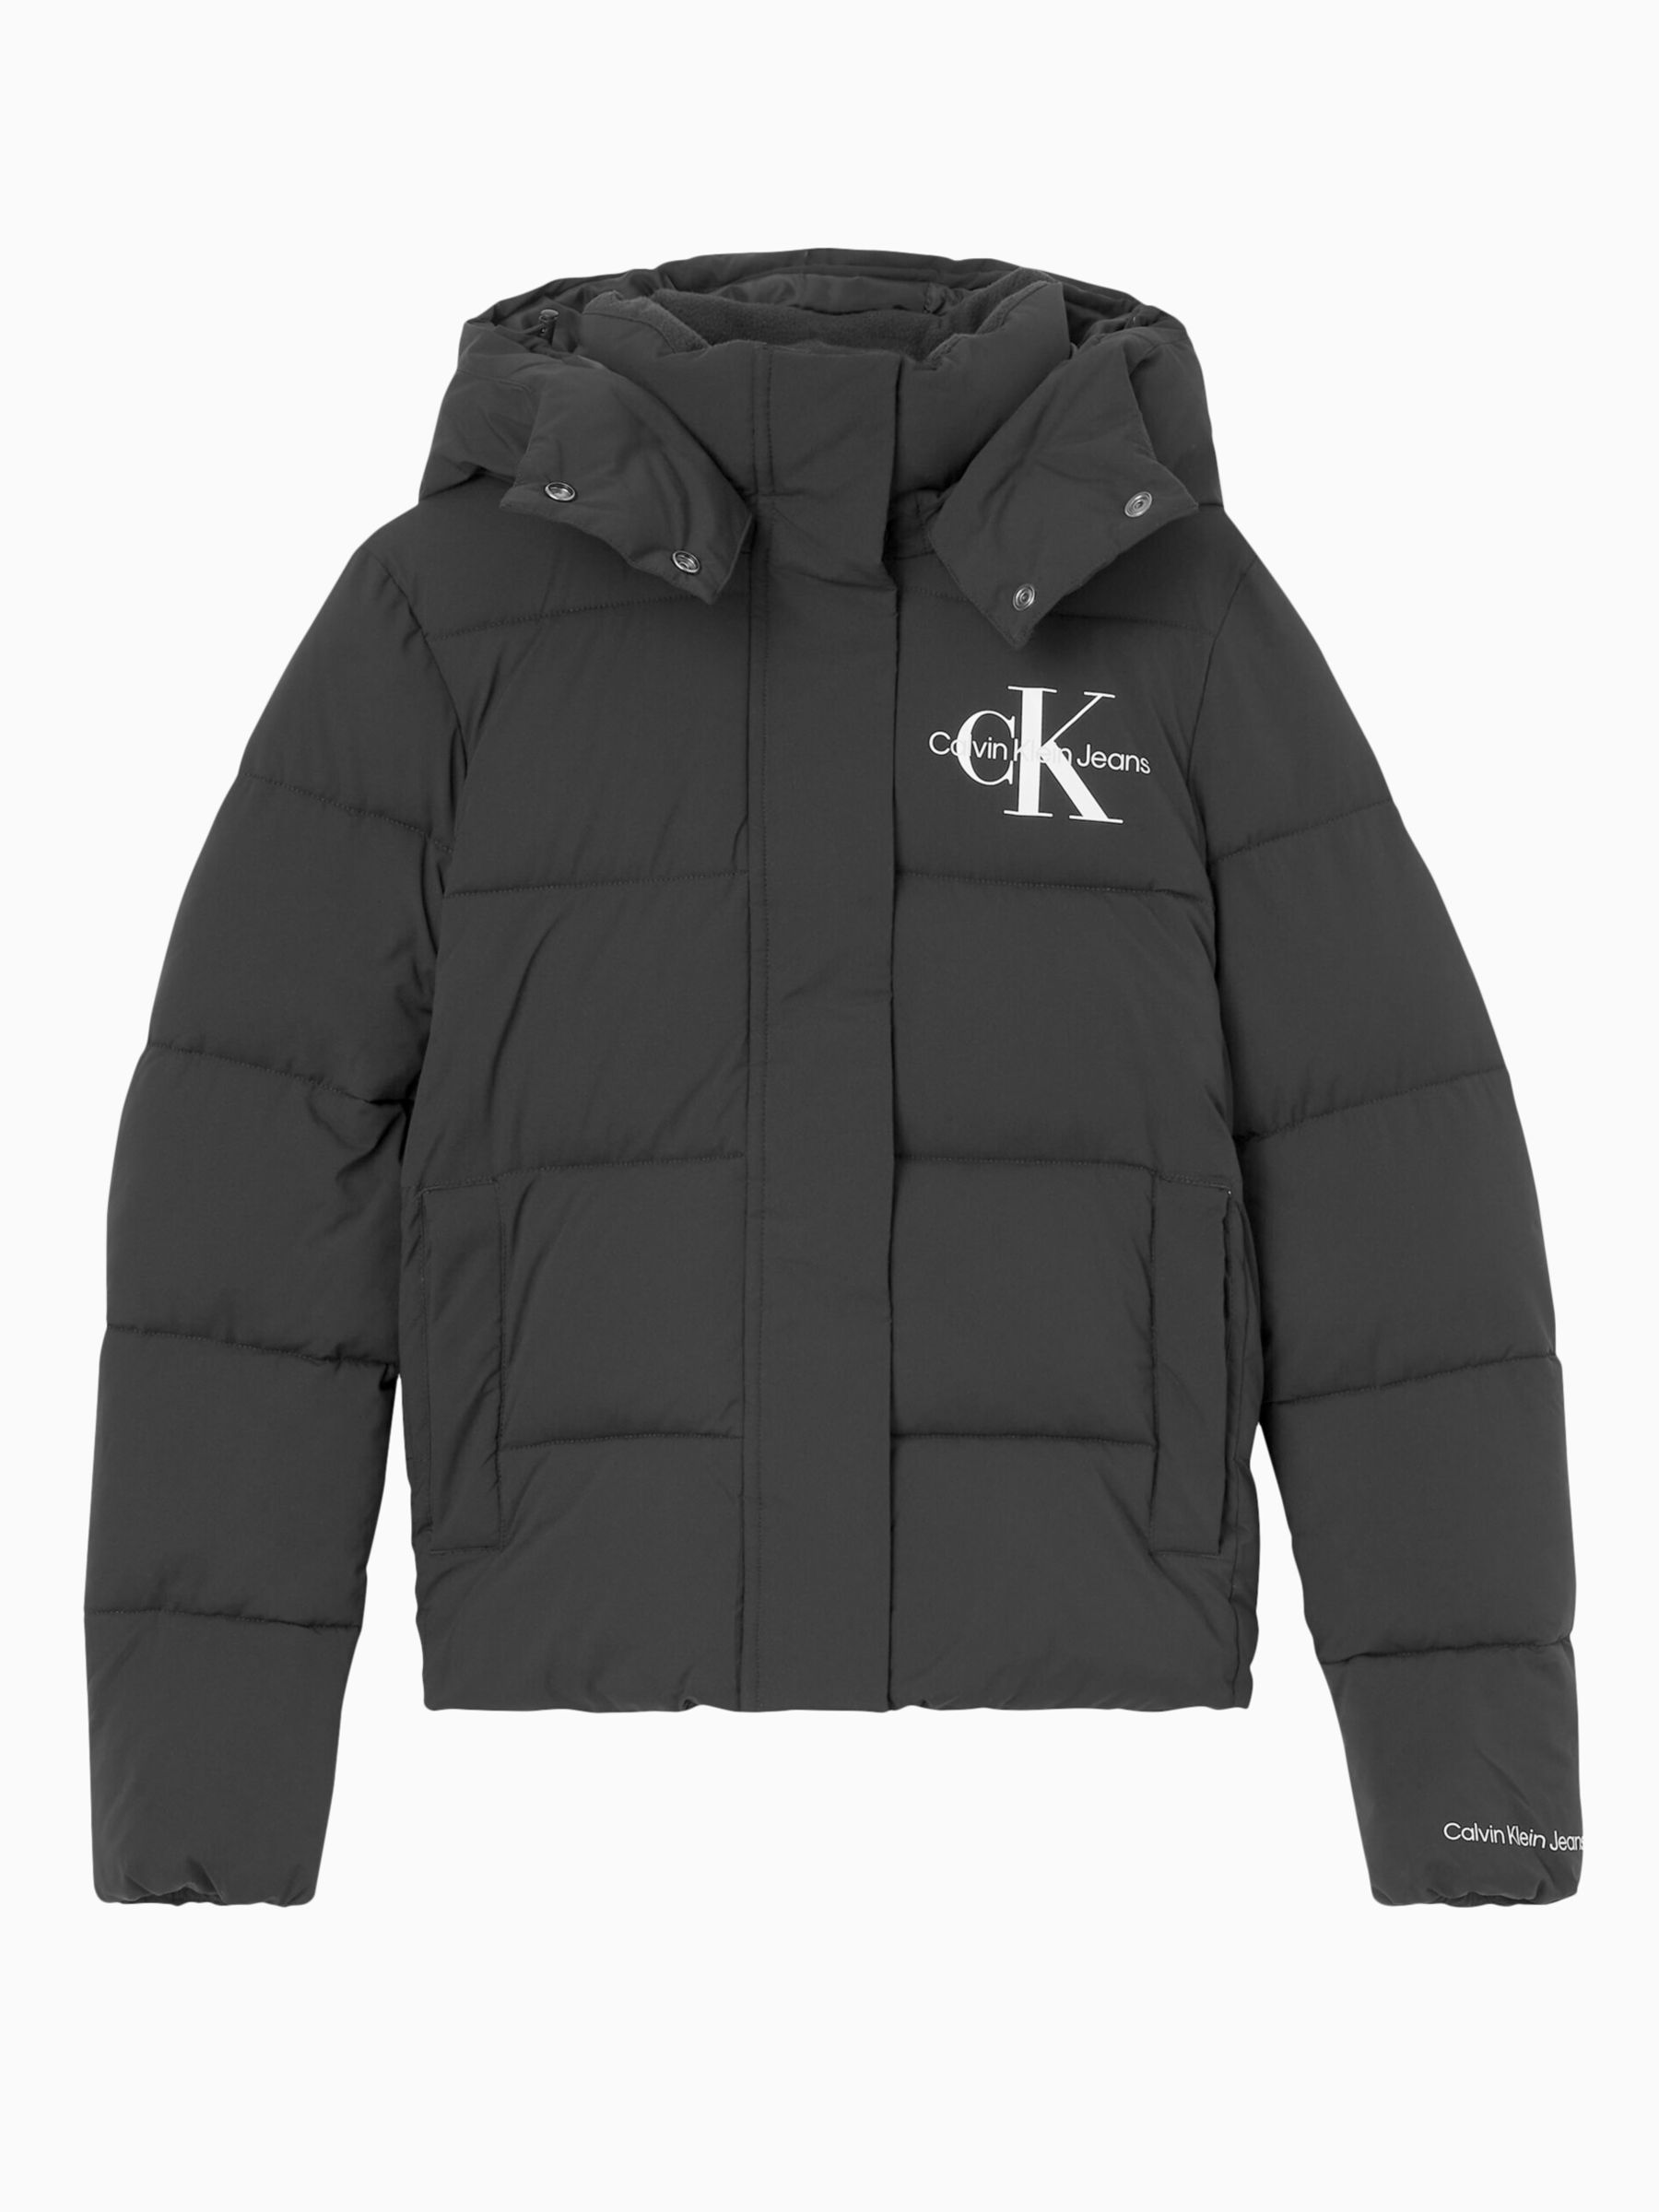 Calvin Klein Logo Puffer Jacket, CK Black at John Lewis & Partners